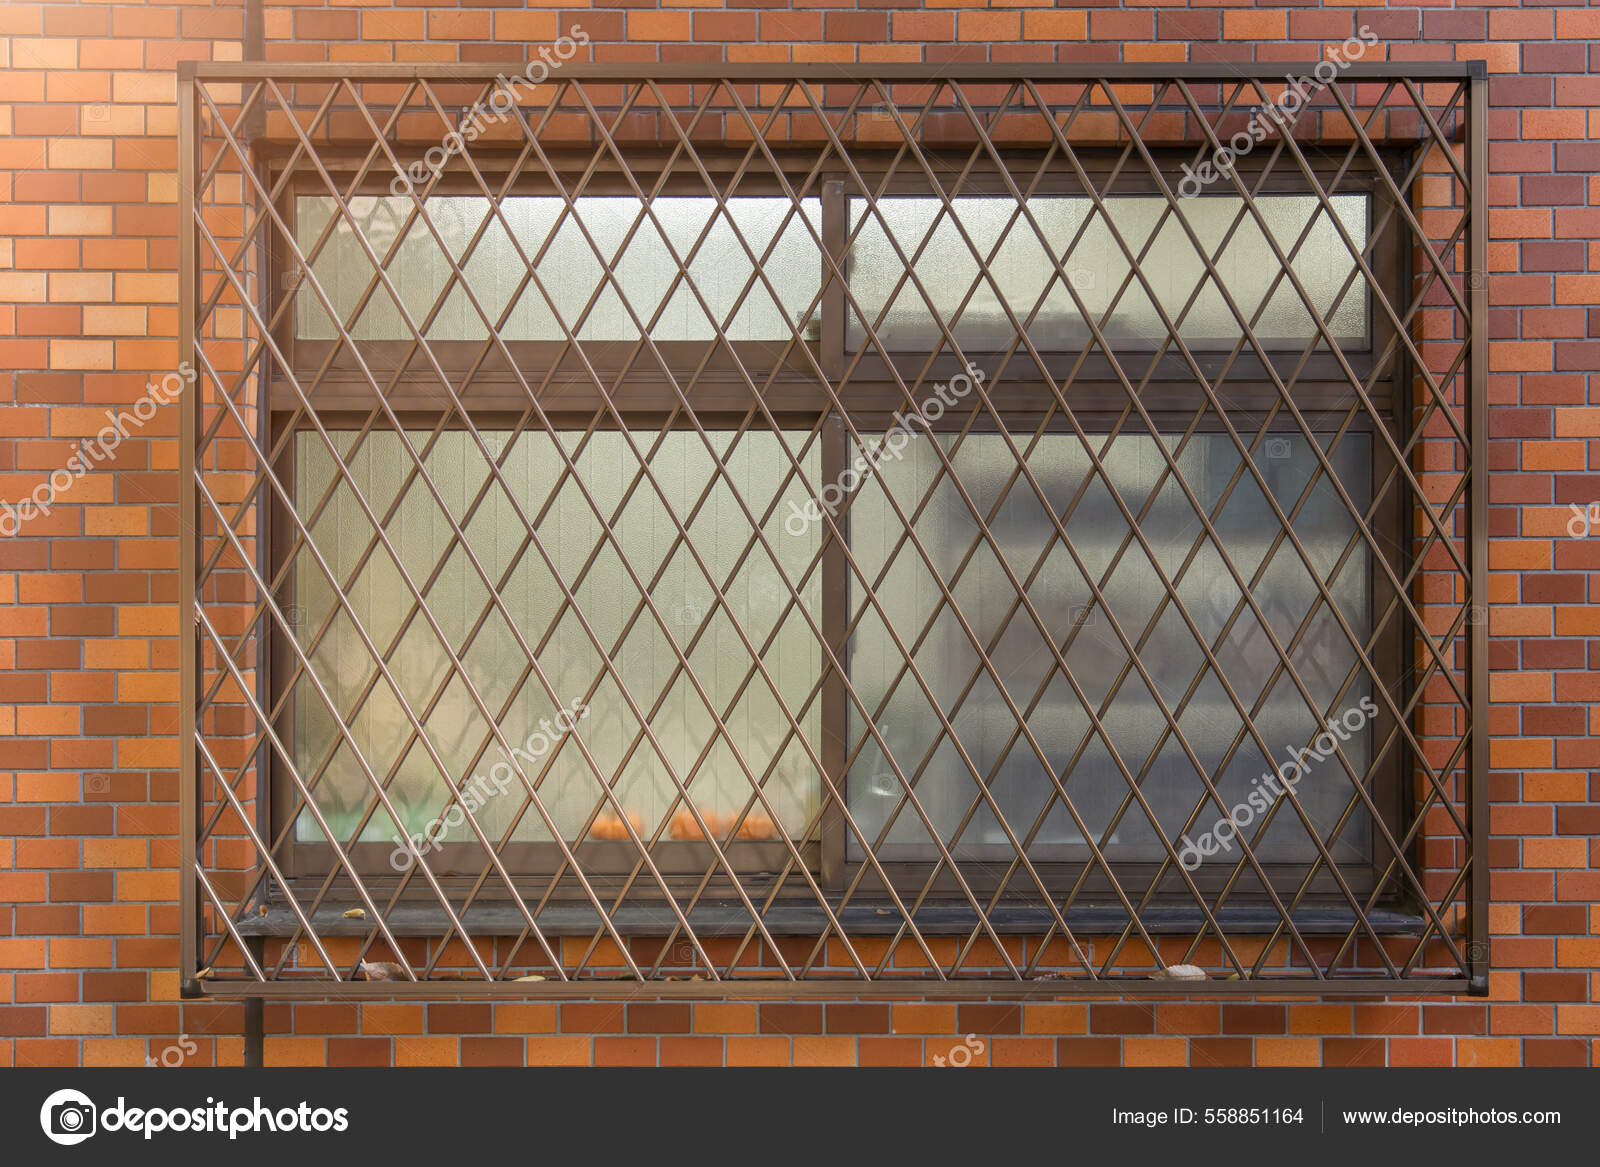 Fensterschutz Mit Metallsicherung Dieb Bricht Schutz Und Dekoration Ein -  Stockfotografie: lizenzfreie Fotos © coffeekai 558851164